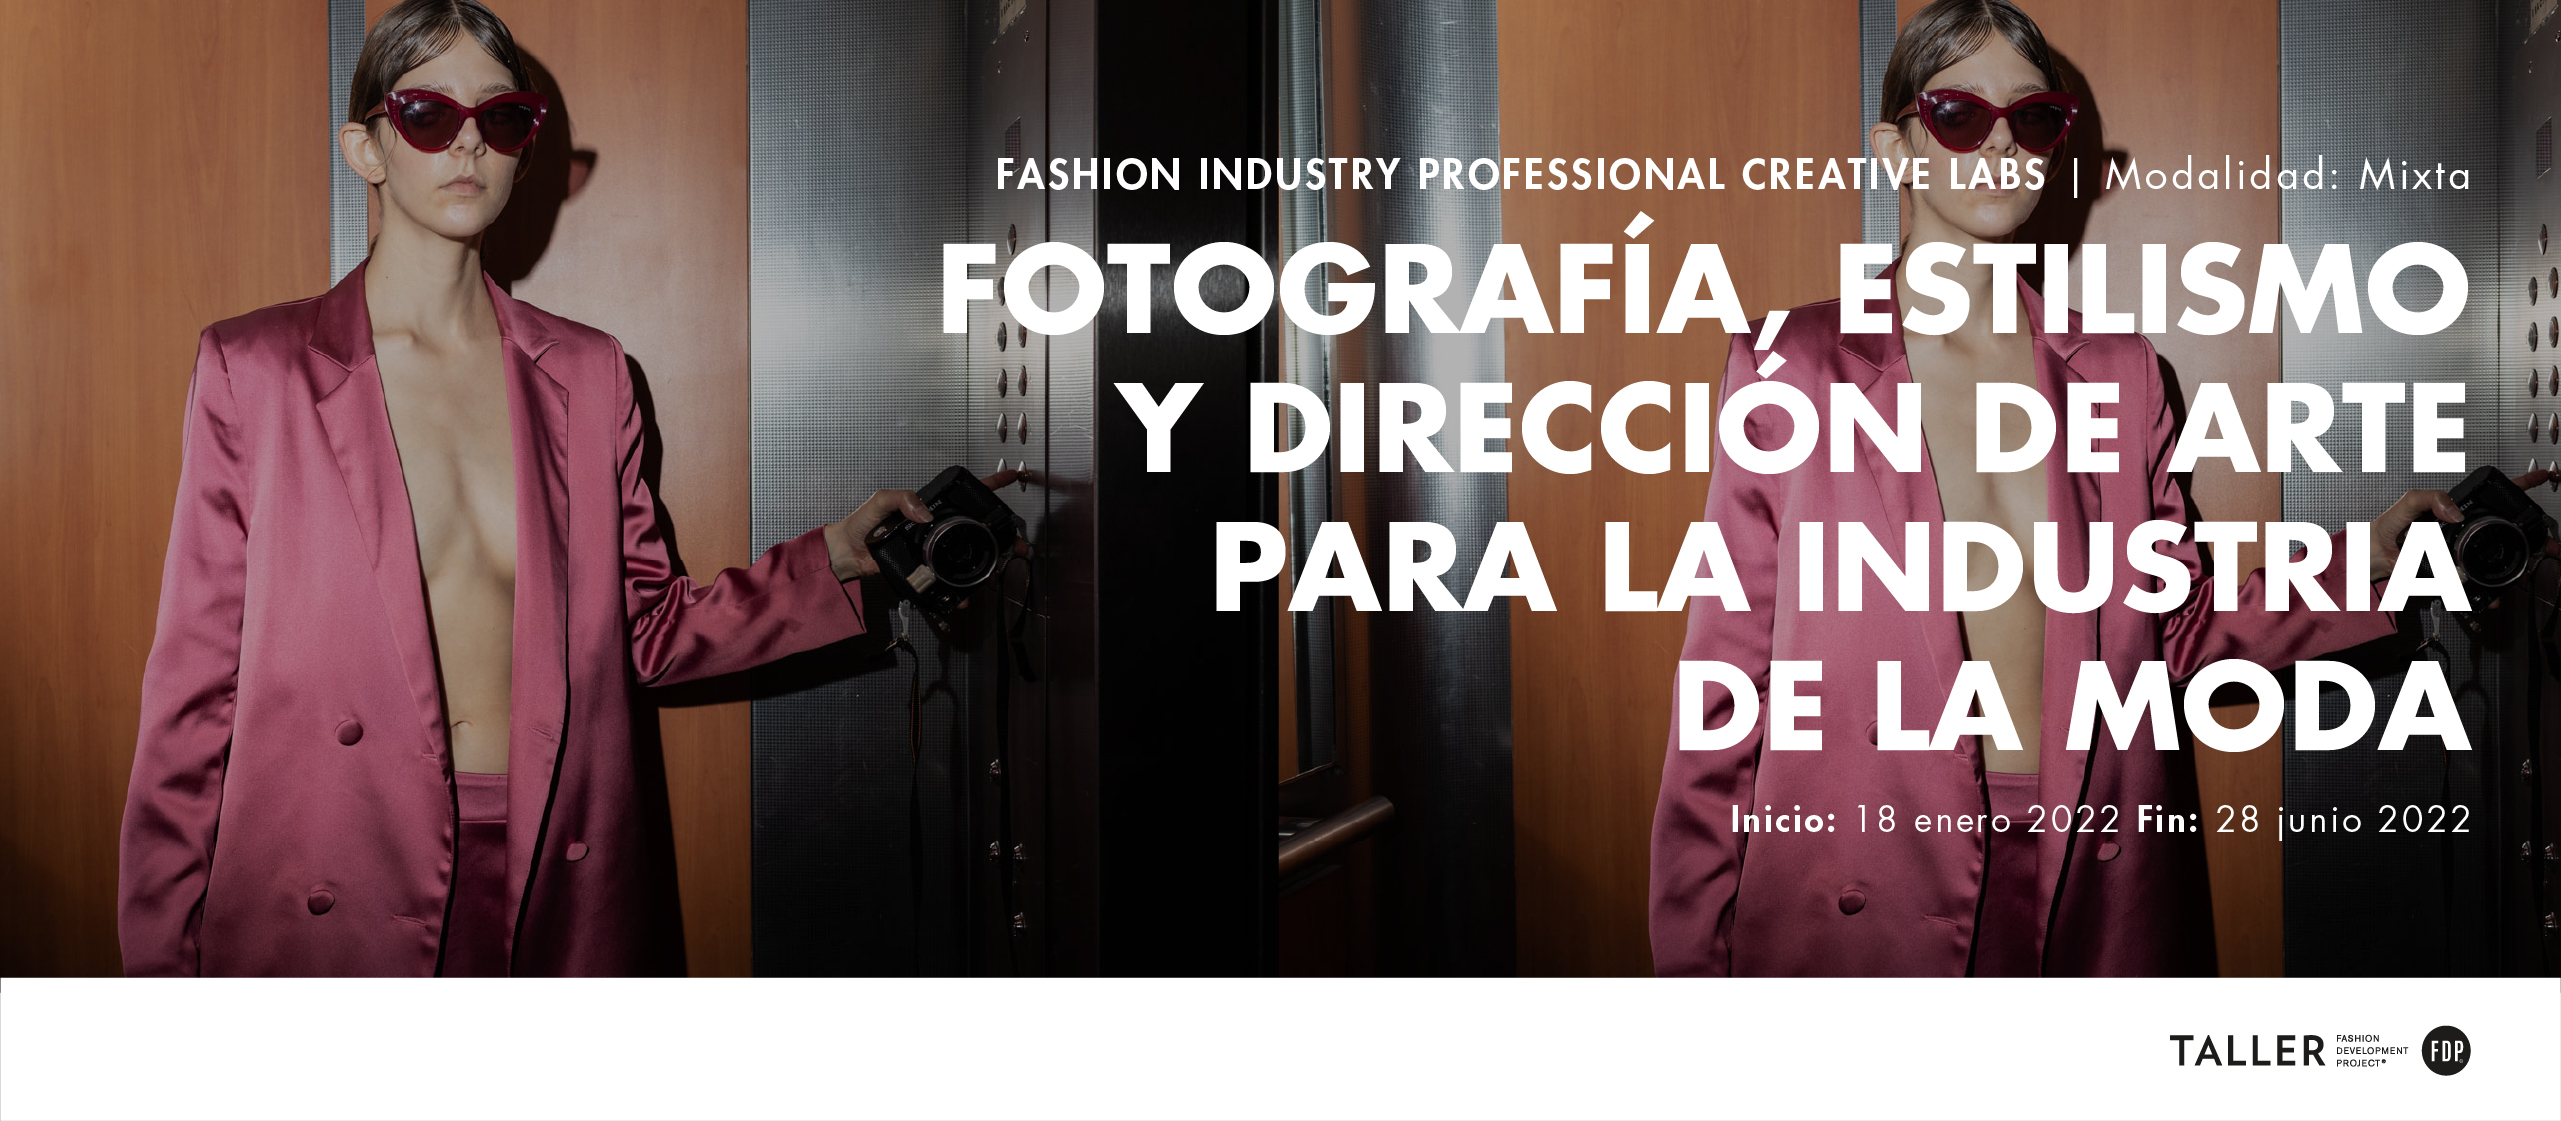 Inicio Creative Lab mixto: Fotografía, estilismo y dirección de arte para la industria de la moda.